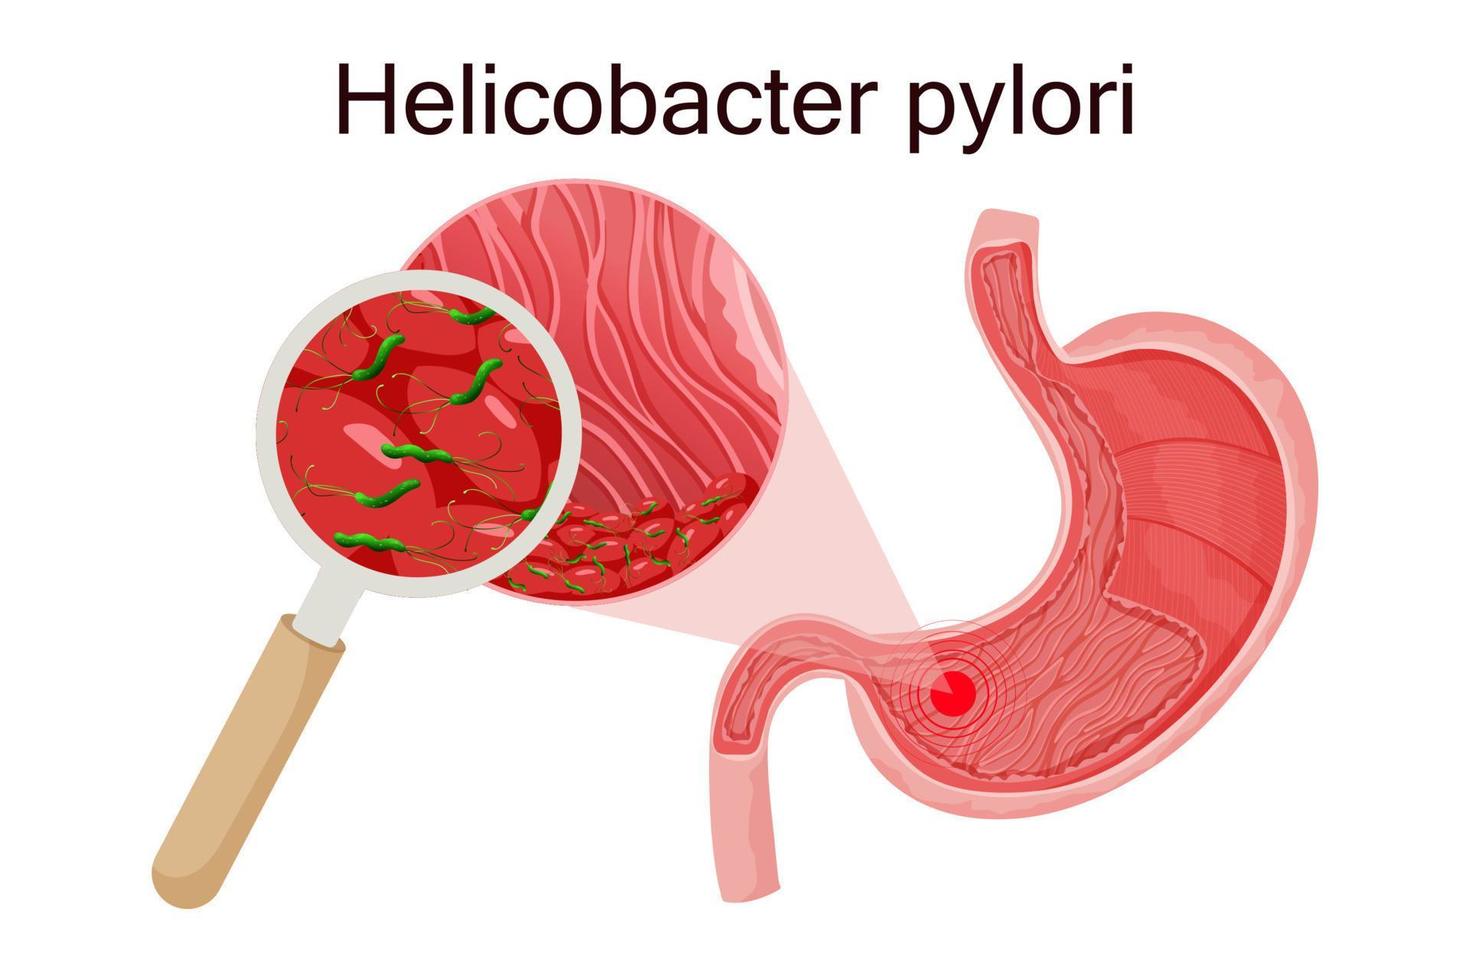 gastritis causada por helicobacter pylori en el estómago bajo lupa. ilustración vectorial detallada vector